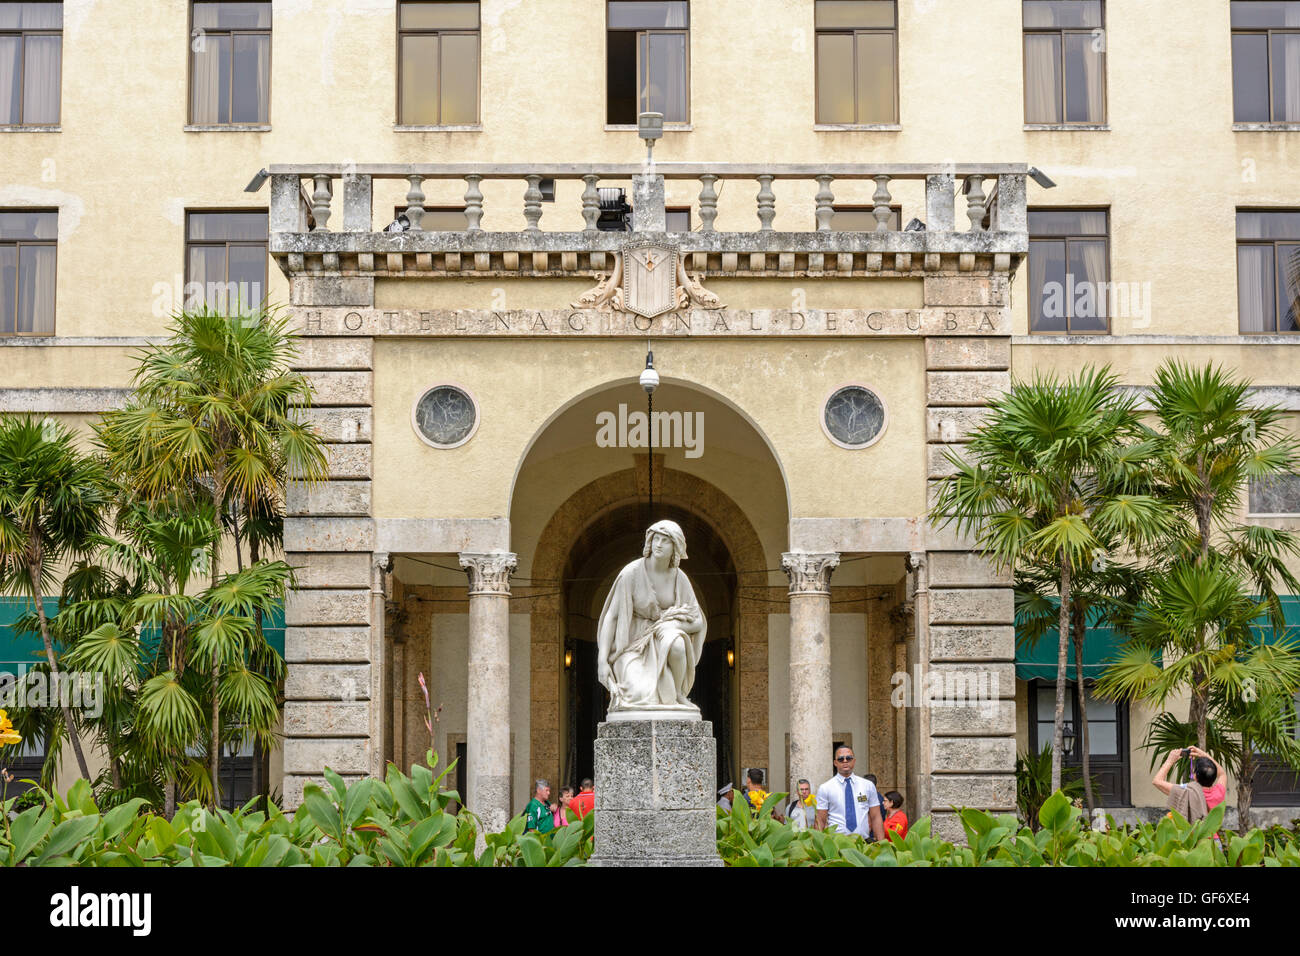 Hotel Nacional de Cuba (sul Malecon), Vedado, Havana, Cuba Foto Stock